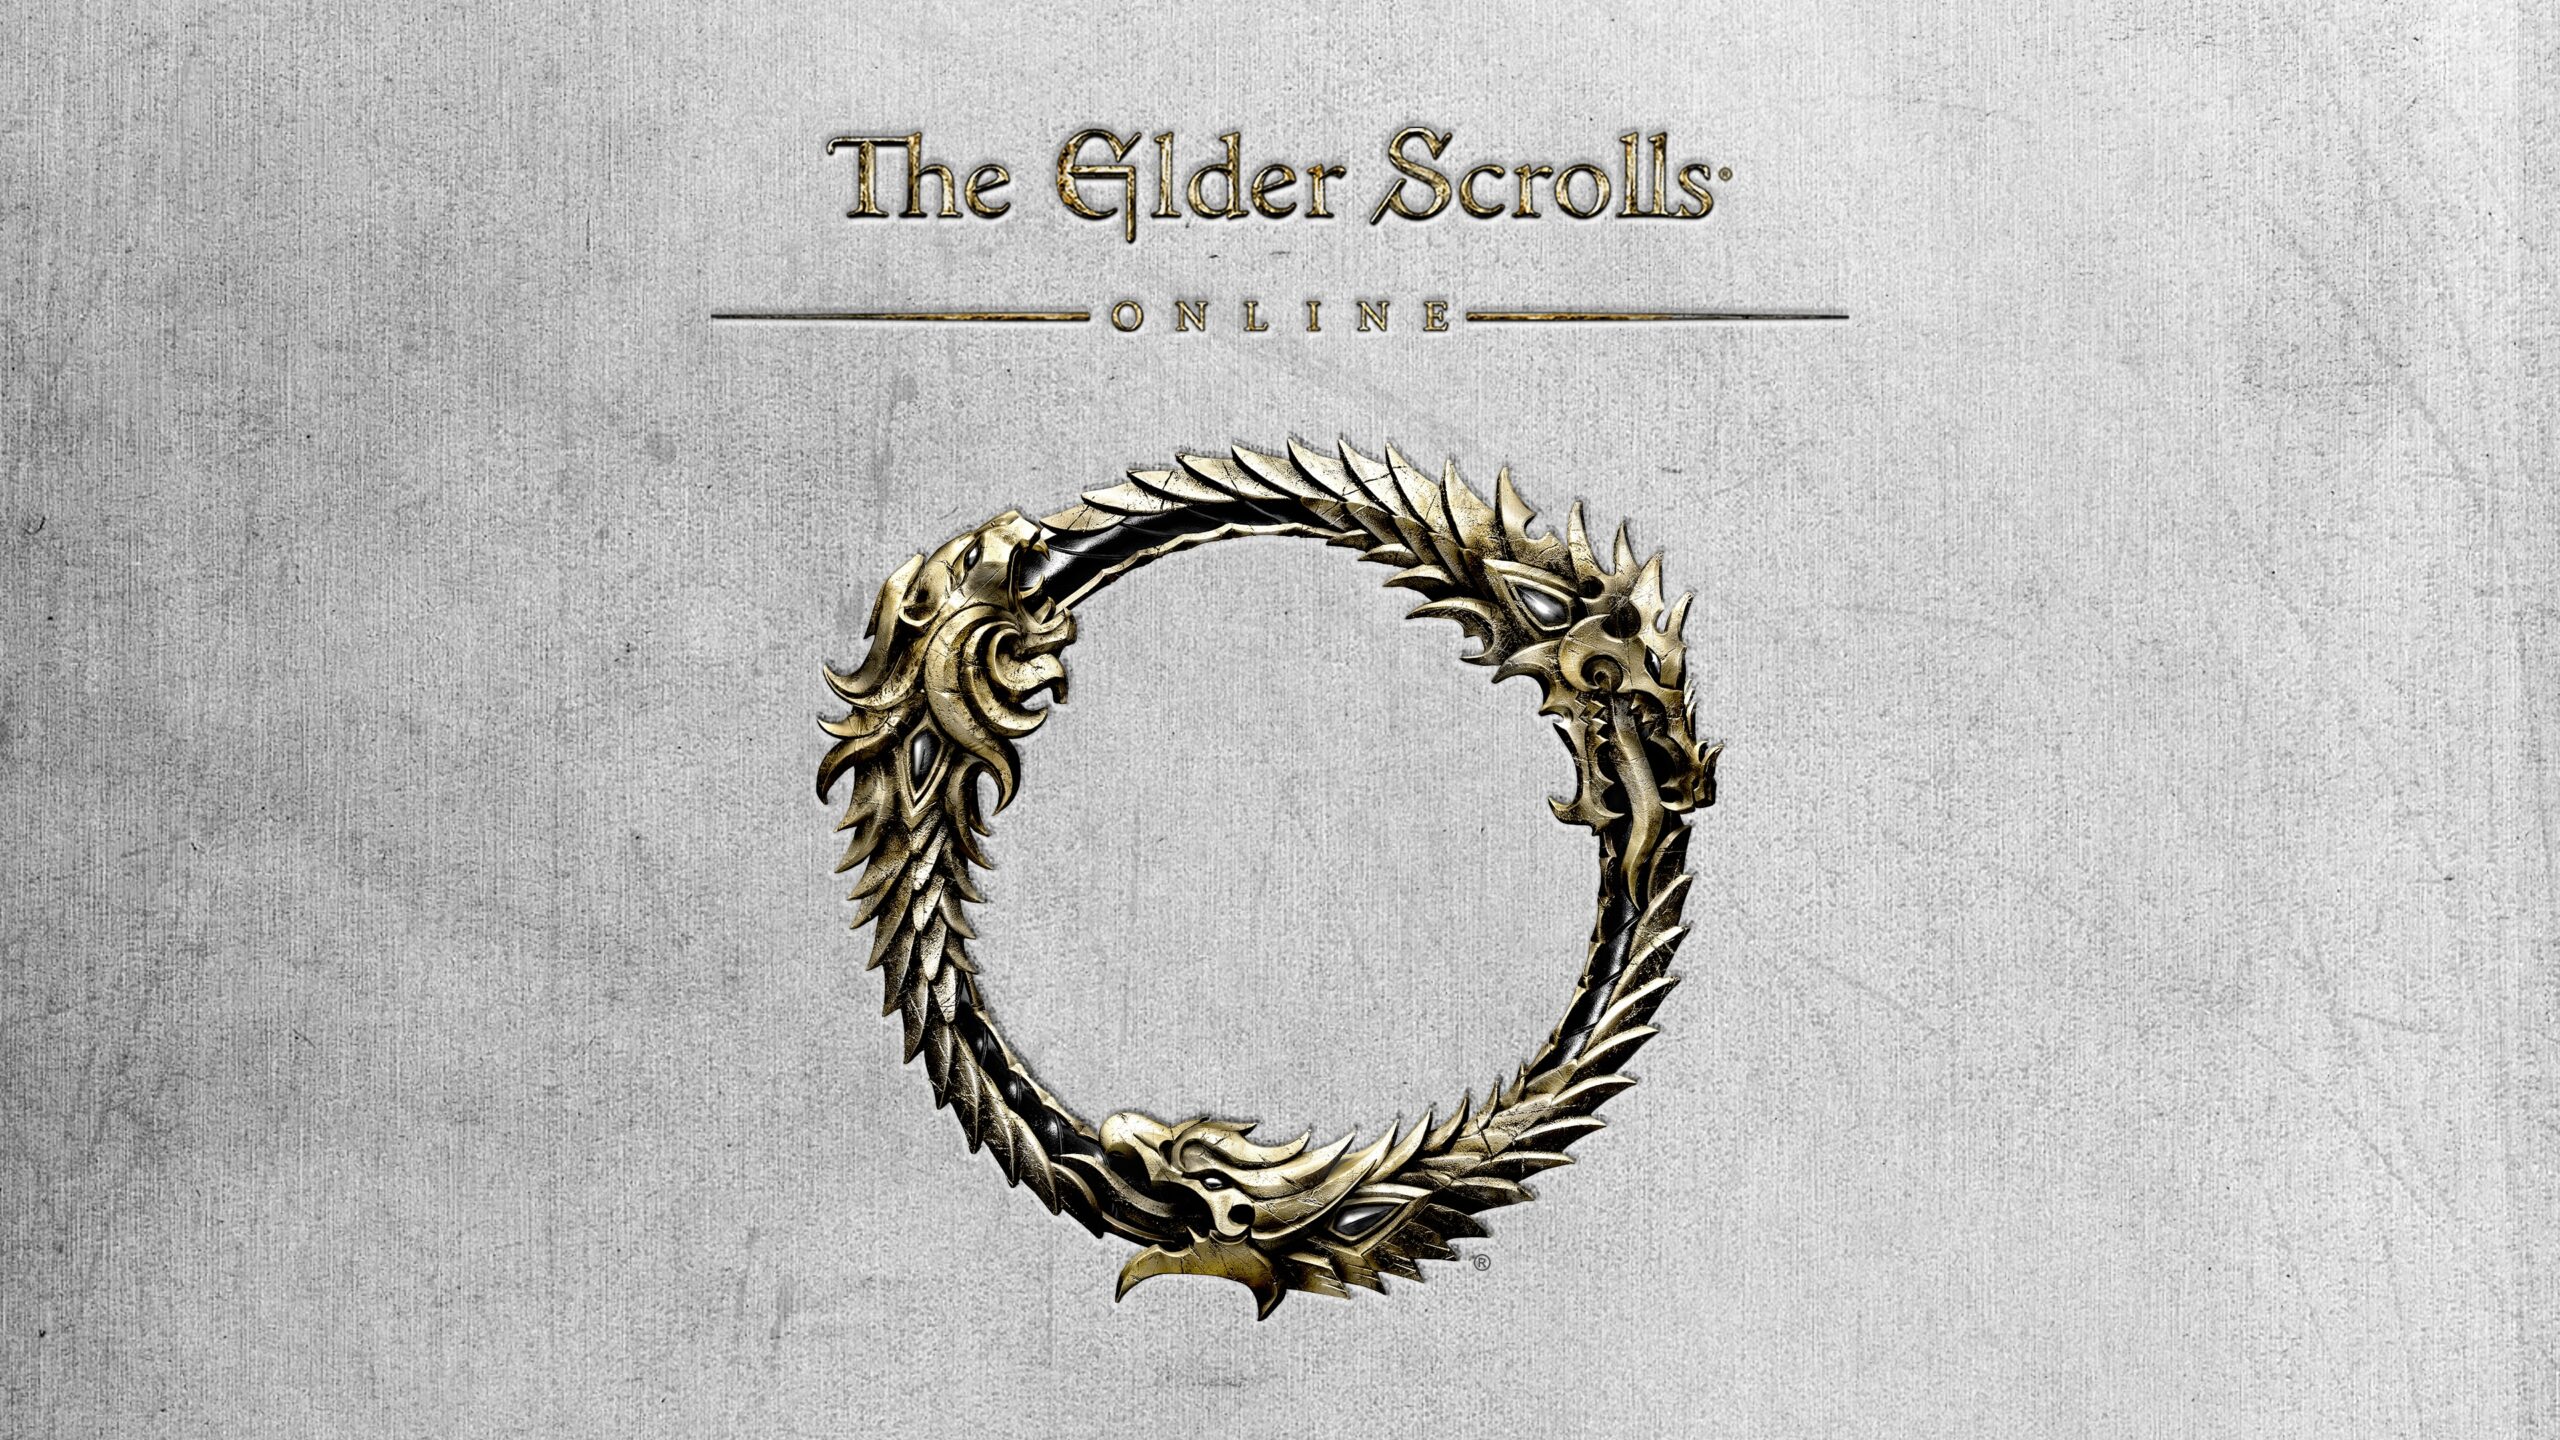 The Elder Scrolls Online nya DLC är Live på konsoler nu!